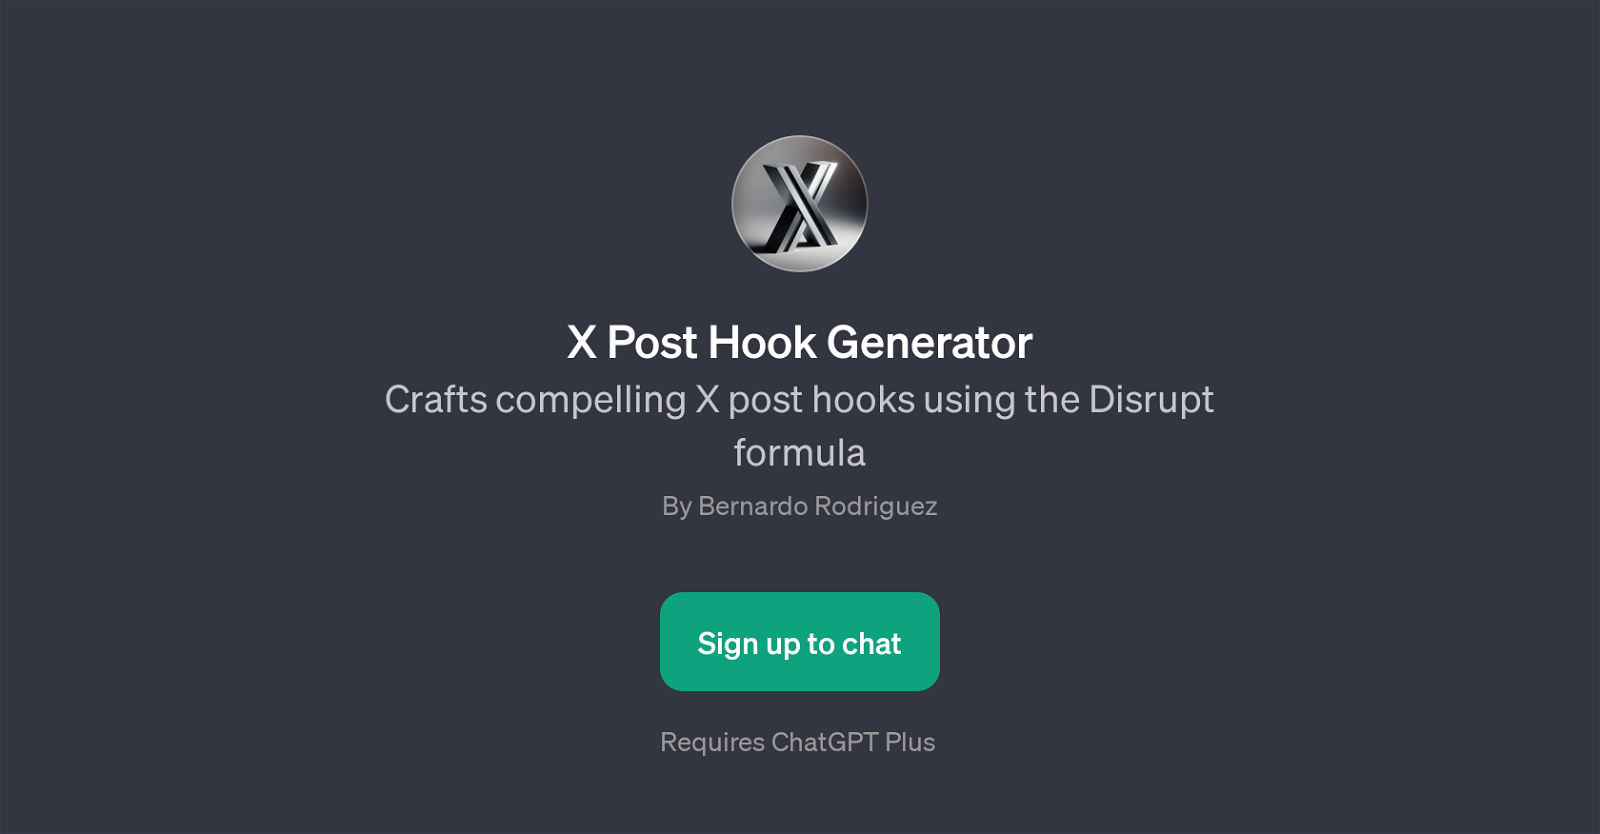 X Post Hook Generator website